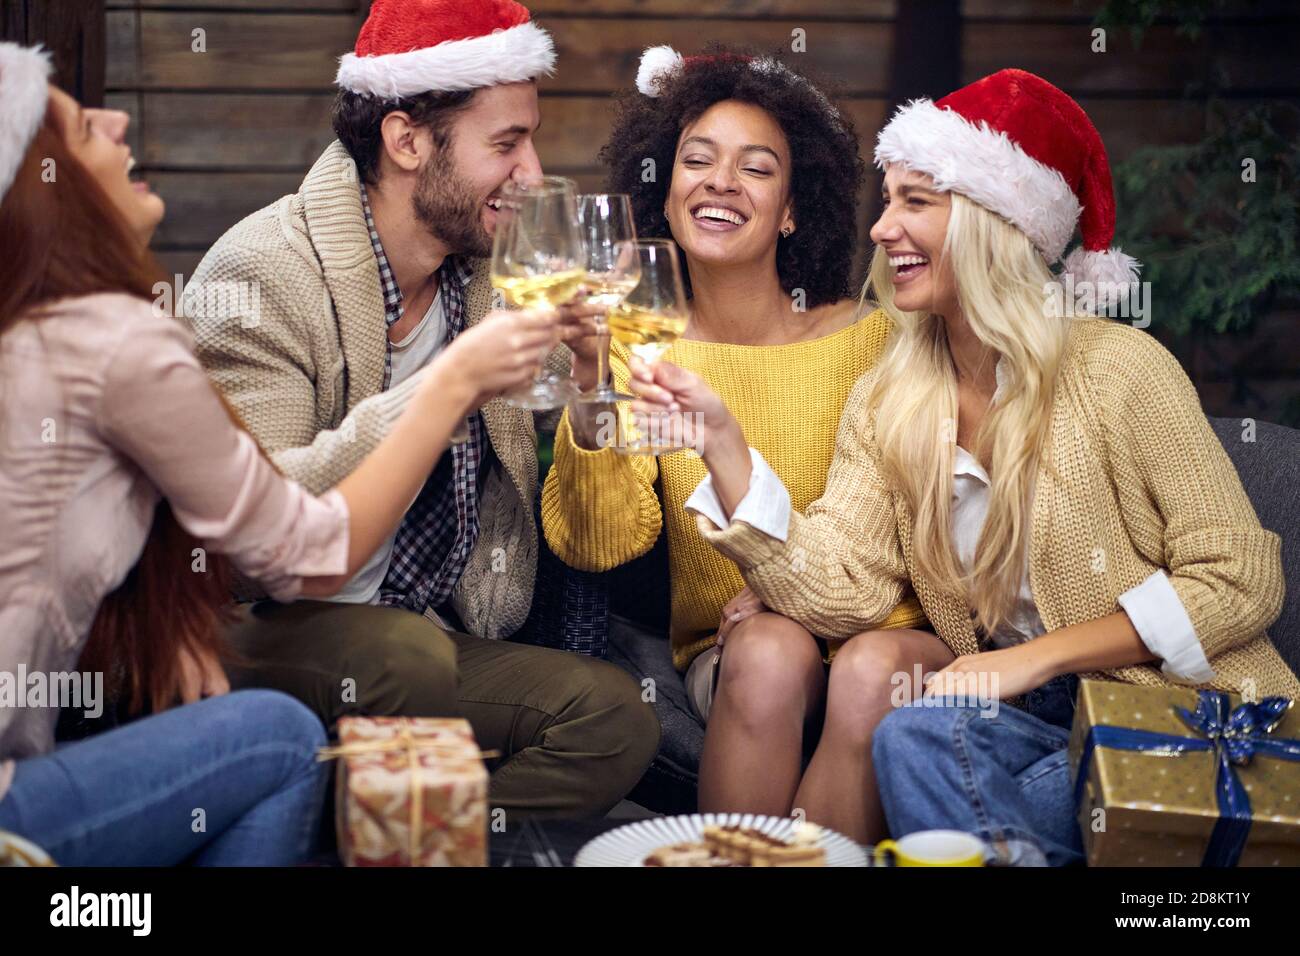 Gruppo di giovani allegri festeggiamenti per natale o festa di Capodanno bevendo champagne in un'atmosfera festosa insieme. Natale, amici, toast, divertimento, p Foto Stock